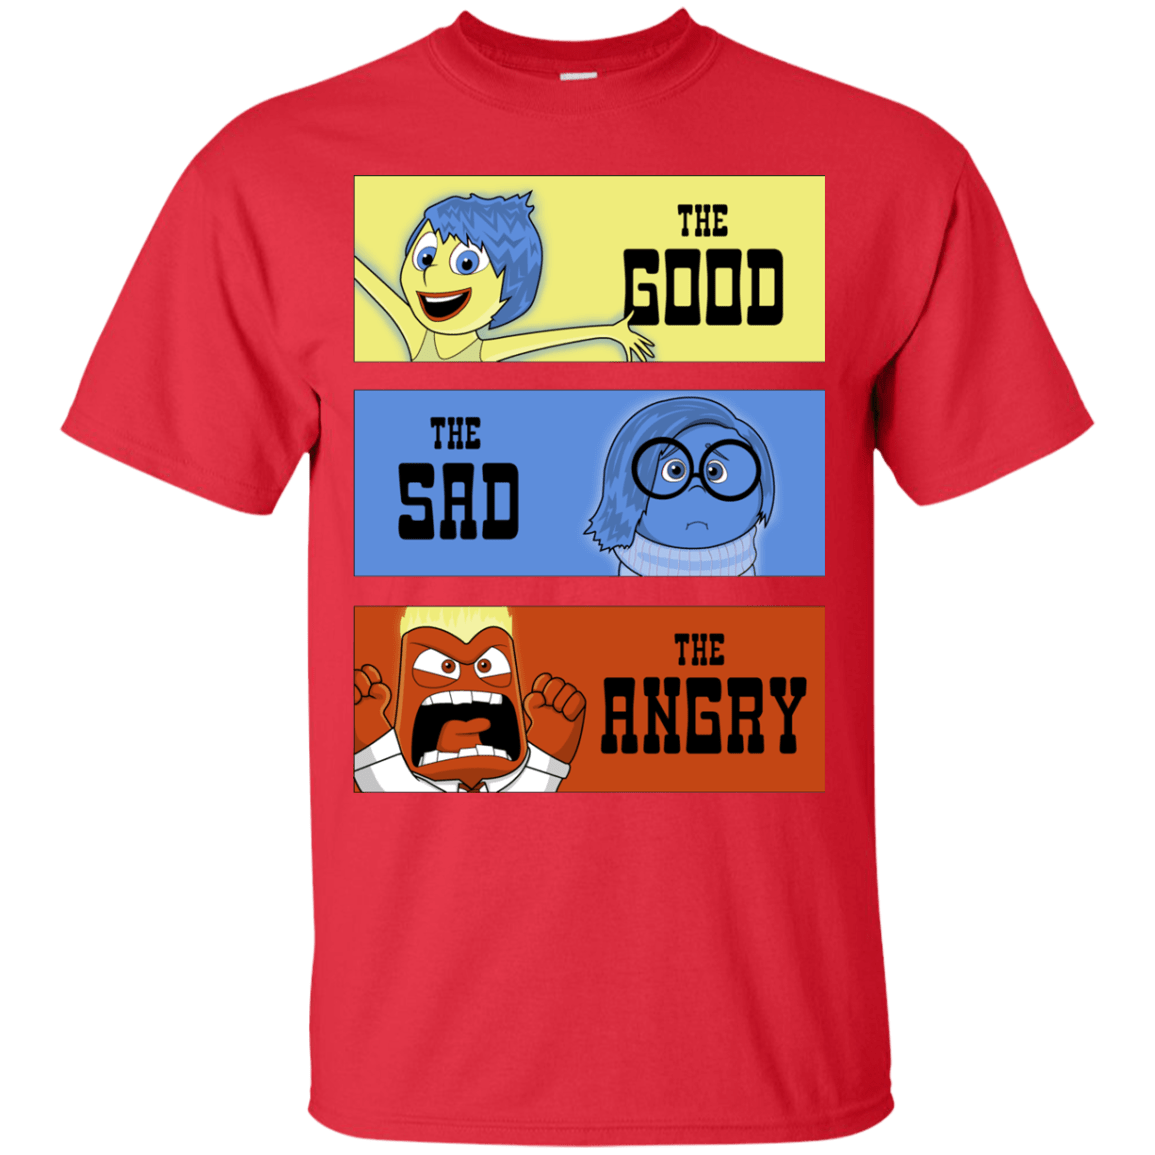 The Good, the Sad & the Angry T-Shirt